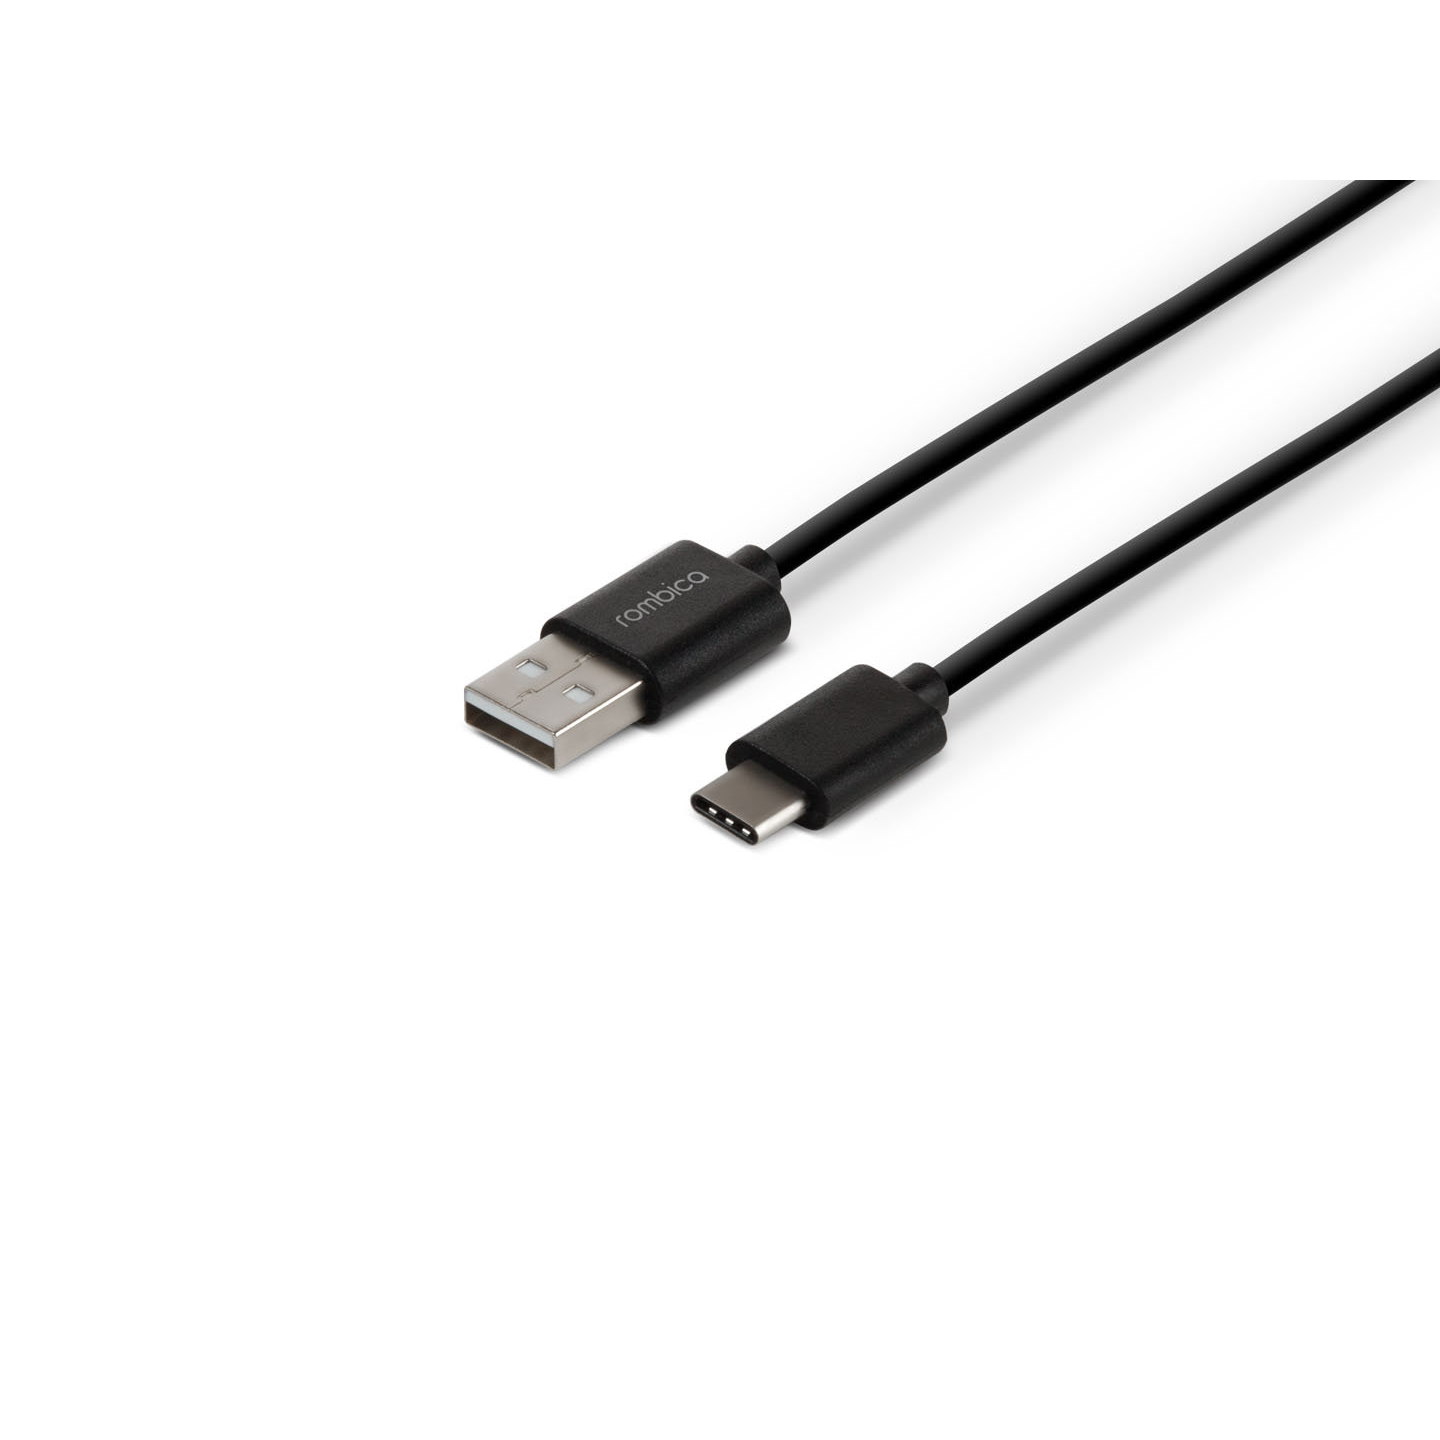 Кабель Rombica Digital CR-01, USB - USB Type-C, пластик, 1м, черный кабель rombica cs 10 usb 2 0 usb type c цвет серебристый 1 м